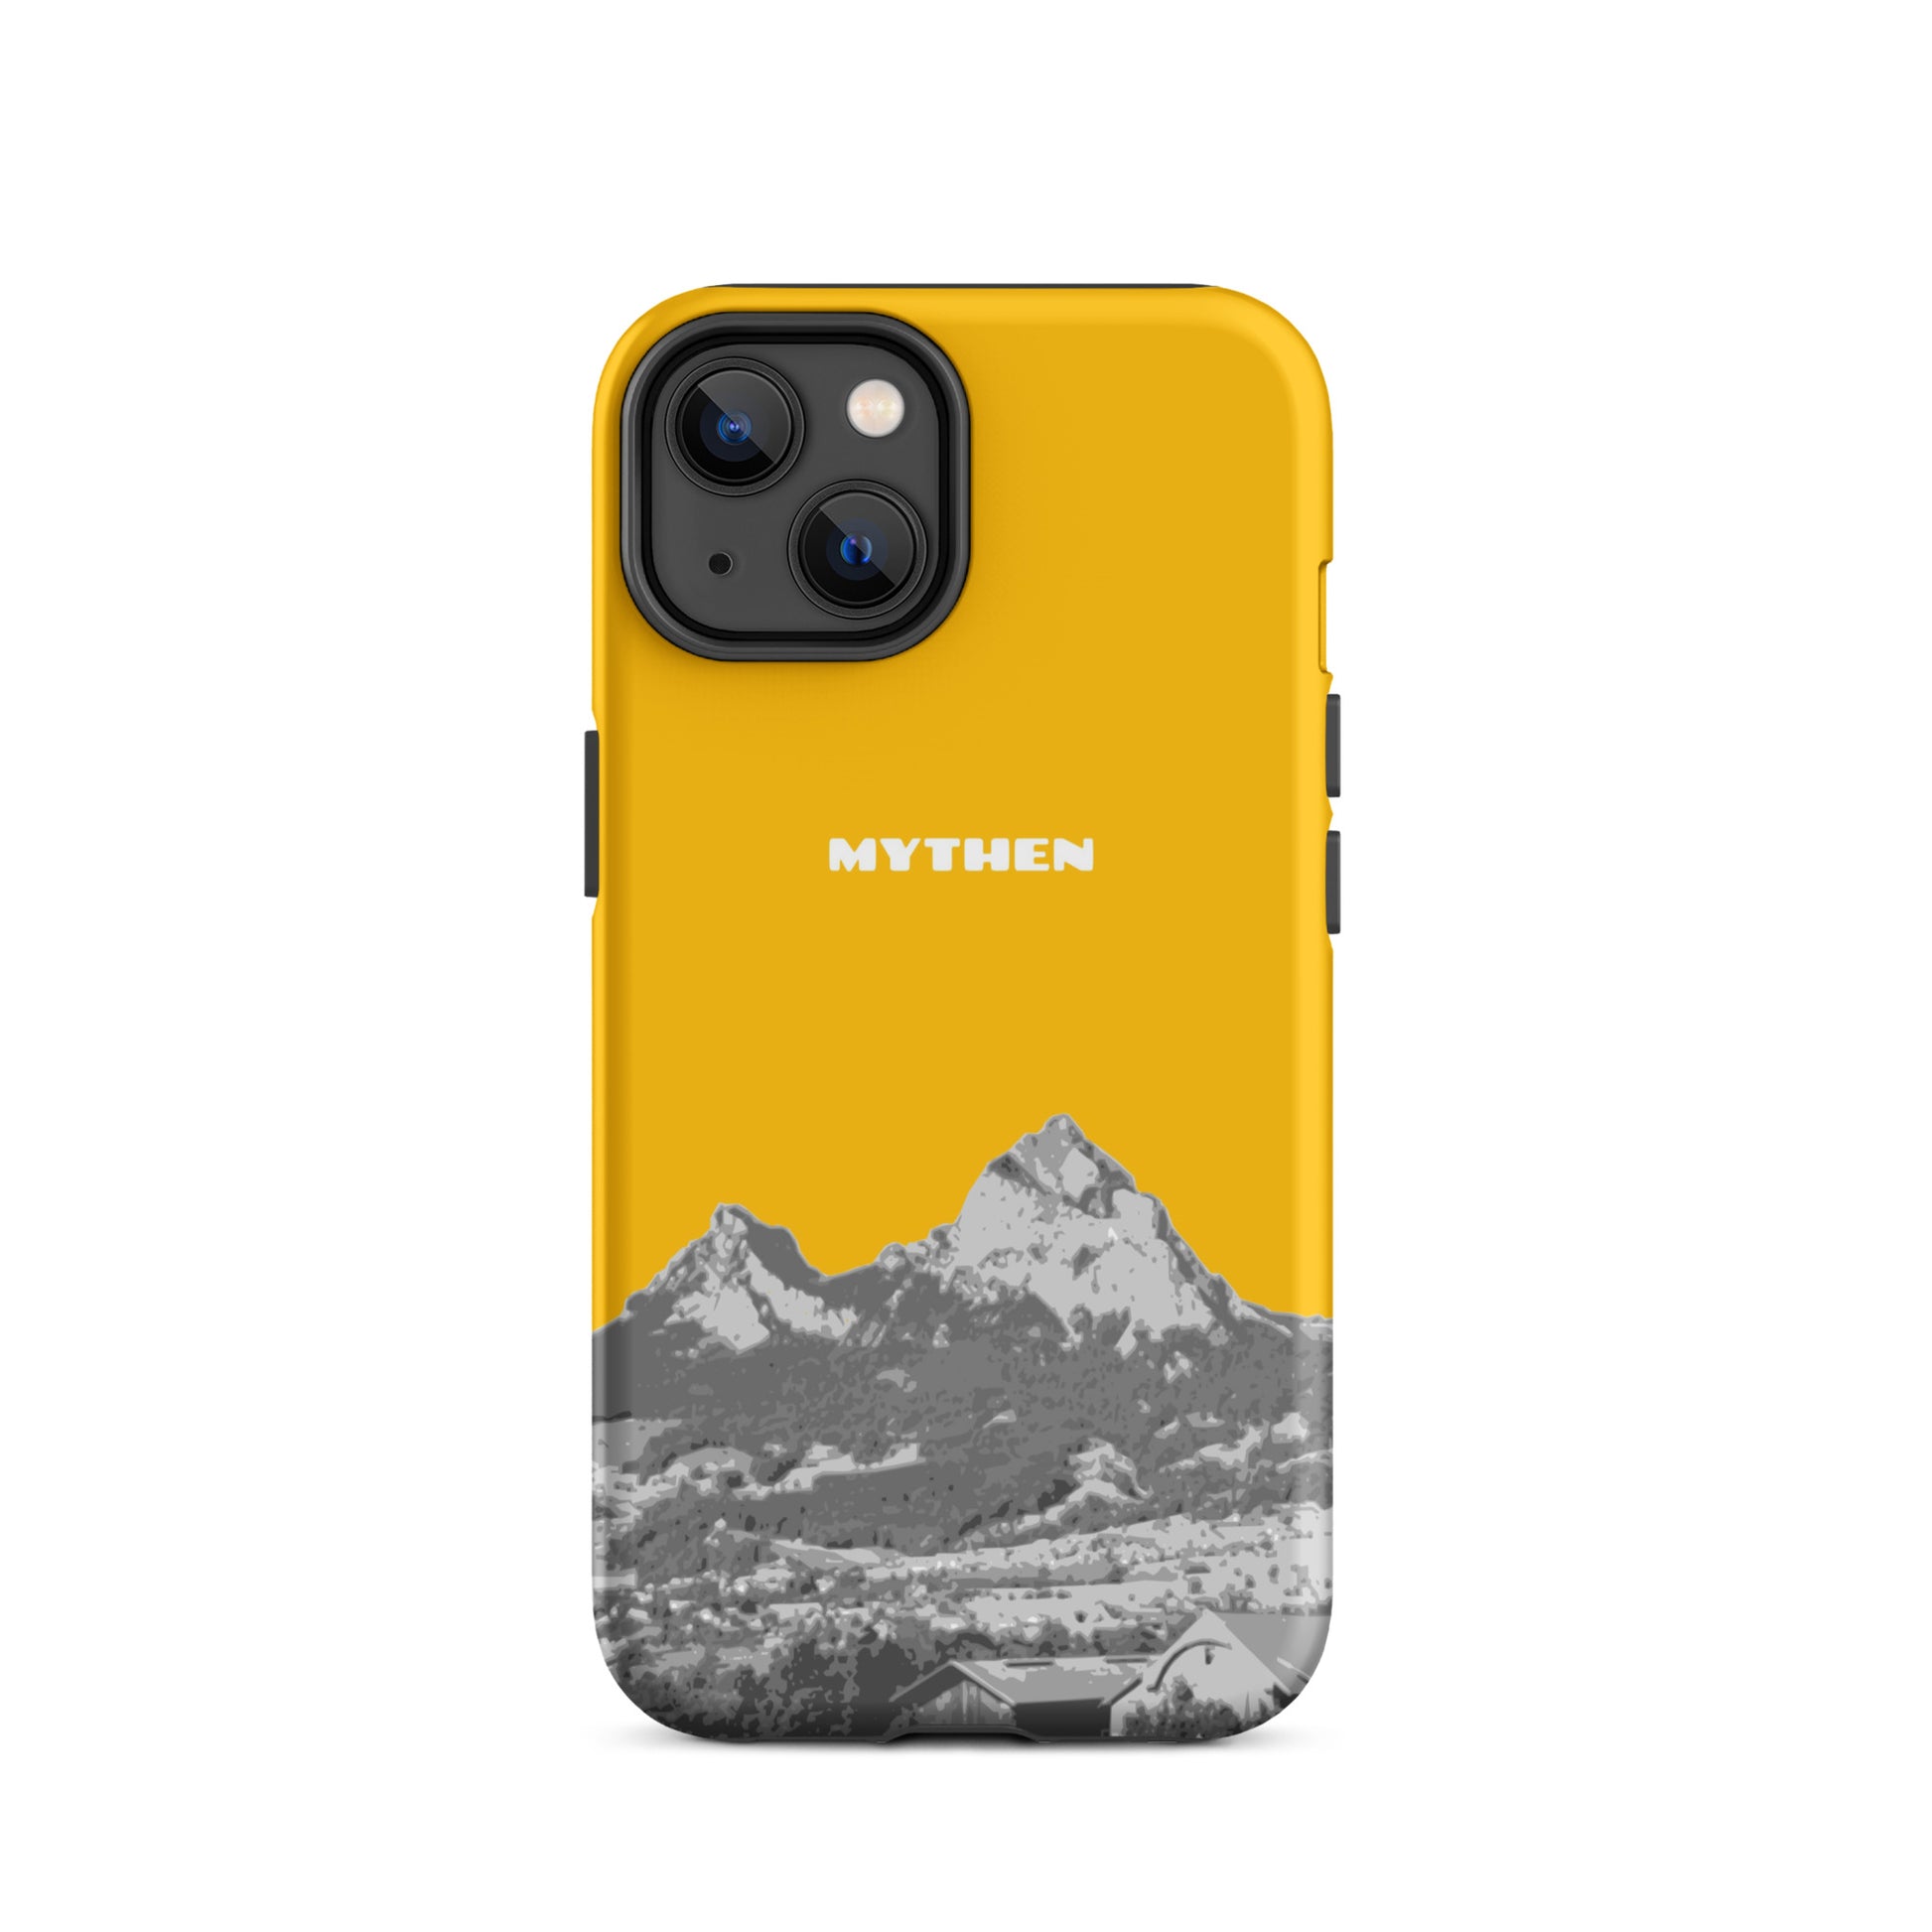 Hülle für das iPhone 14 von Apple in der Farbe Goldgelb, dass den Grossen Mythen und den Kleinen Mythen bei Schwyz zeigt. 